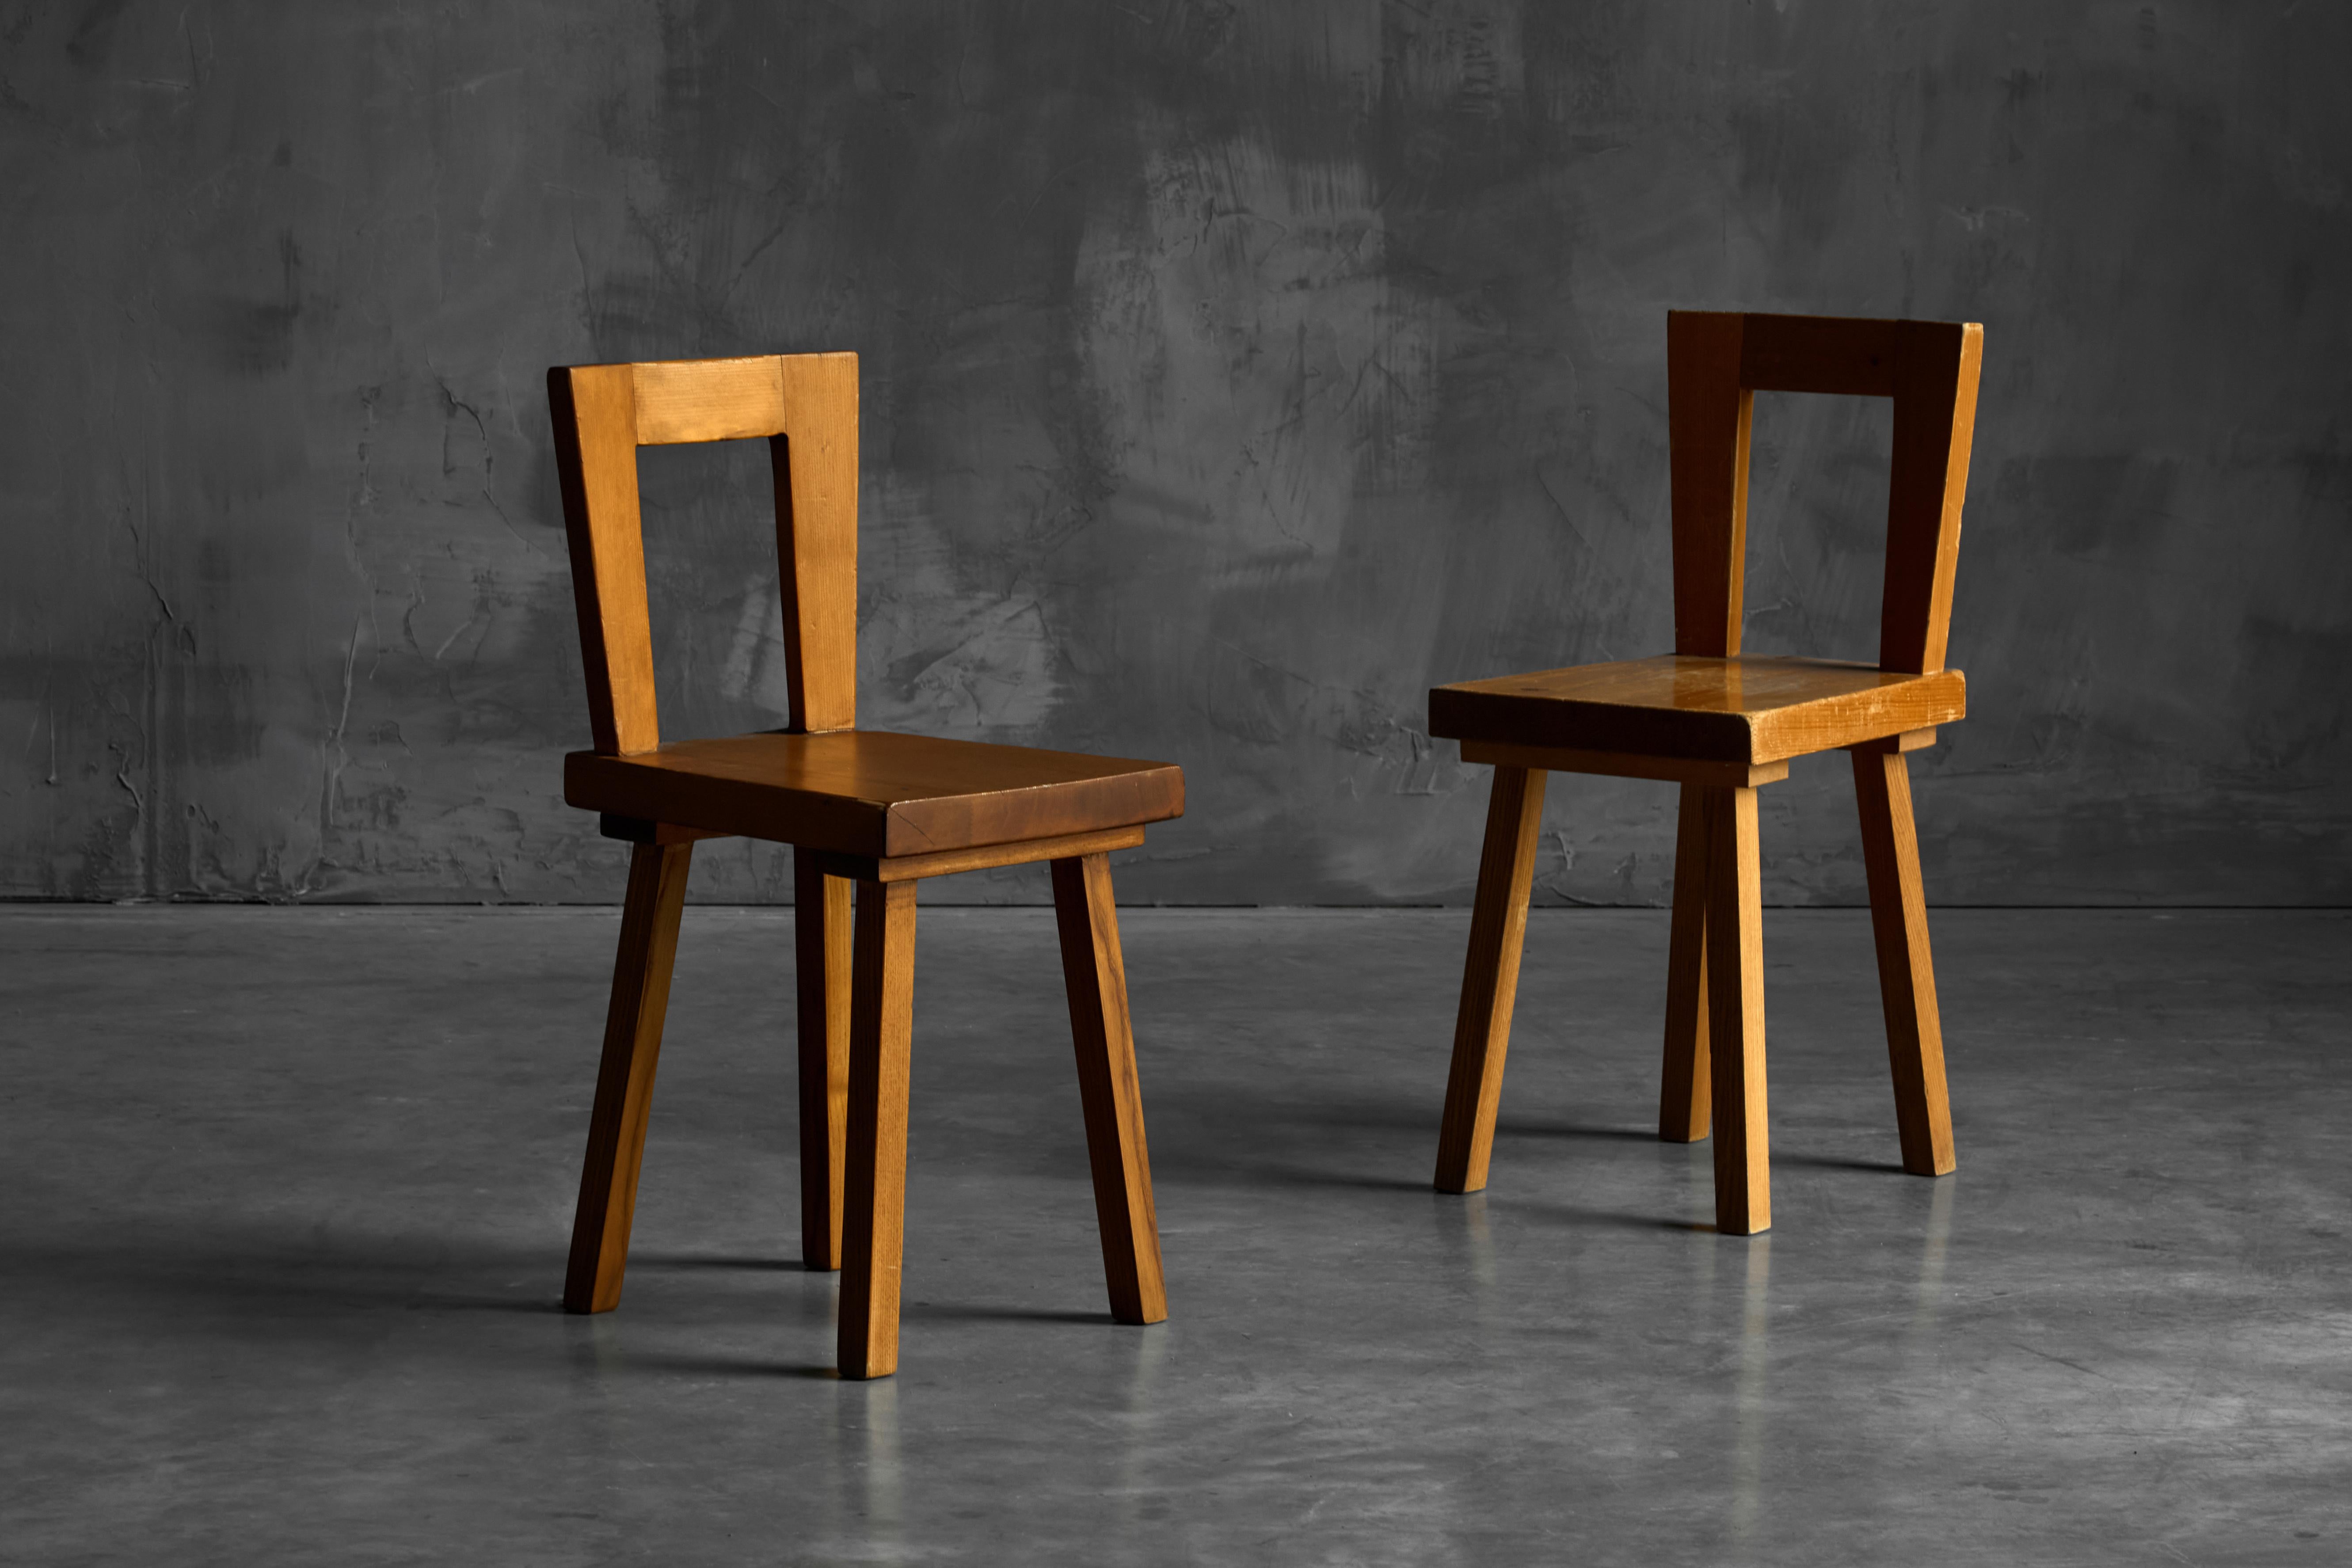 Chaises de salle à manger conçues par Charlotte Perriand, fabriquées pour l'intérieur de l'emblématique hôtel Les Arcs dans les Alpes françaises dans les années 1960. Ces chaises rares incarnent la sophistication épurée caractéristique de la période